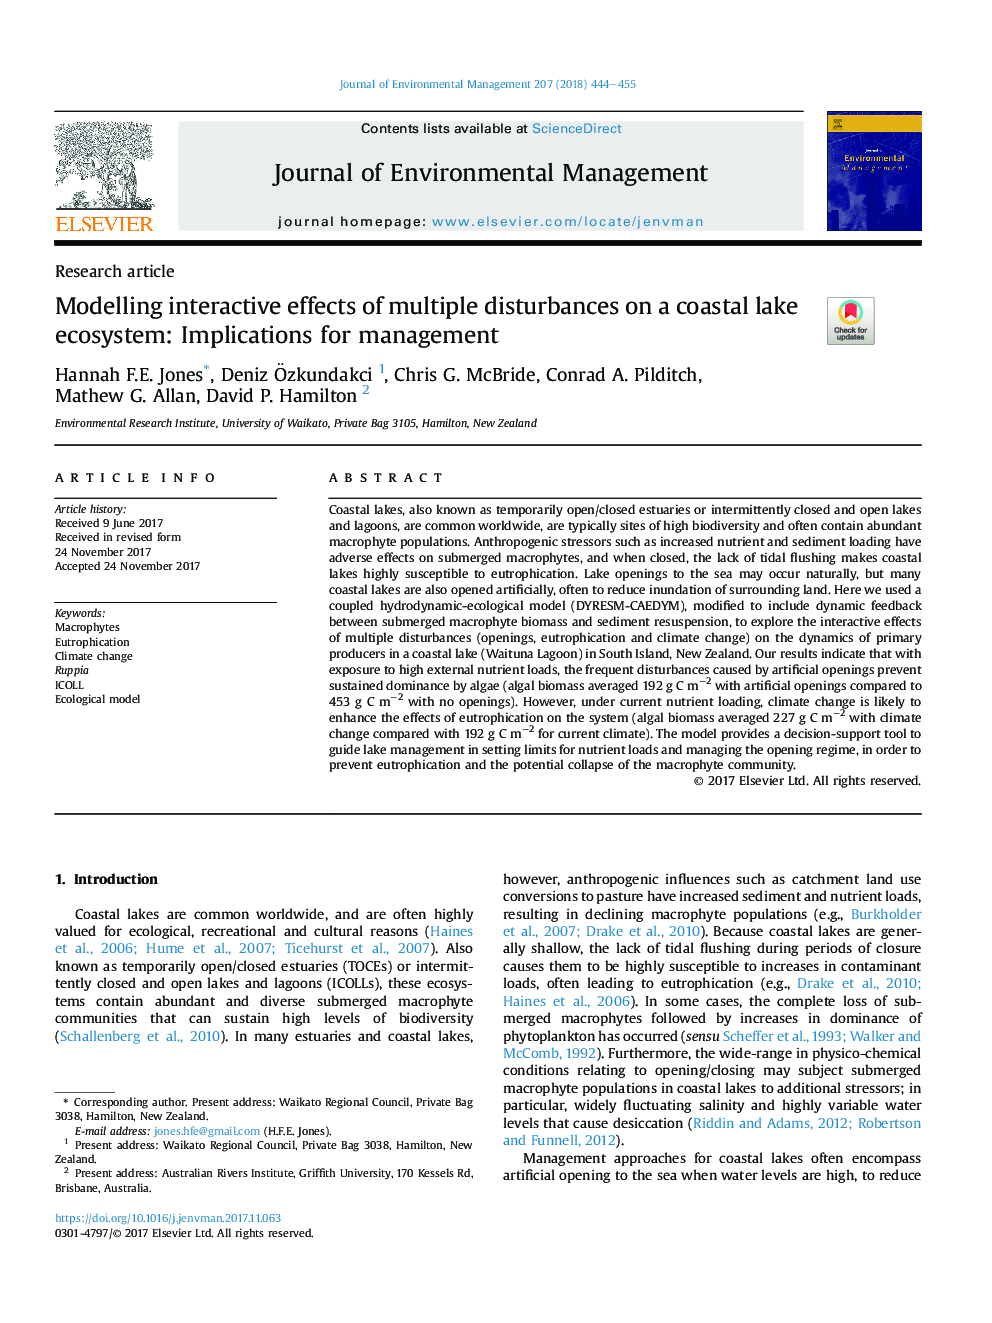 مدل سازی اثرات تعاملی اختلالات متعدد در اکوسیستم دریاچه ساحلی: پیامدهای مدیریت 